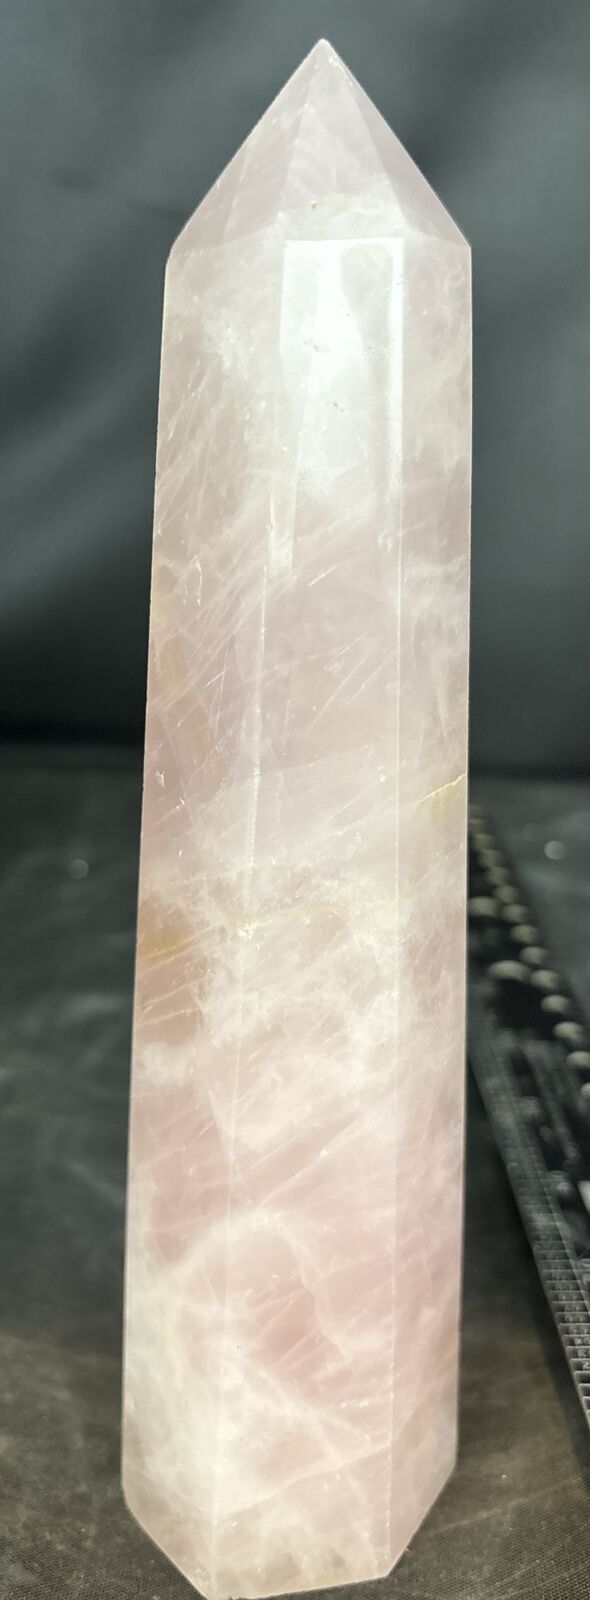 7 1/2 inch rose quartz tower